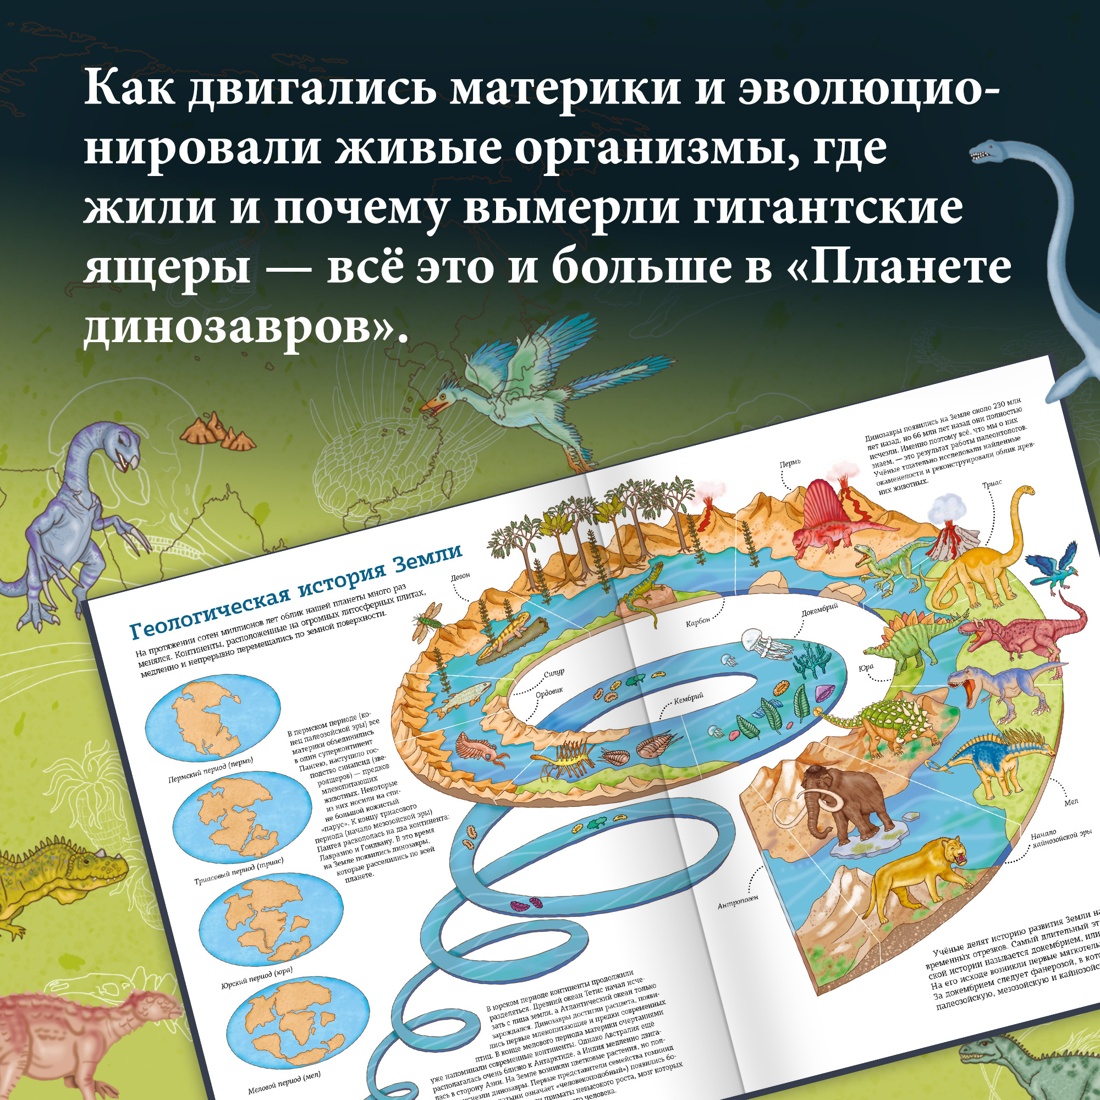 Промо материал к книге "Планета динозавров. Иллюстрированный атлас" №2